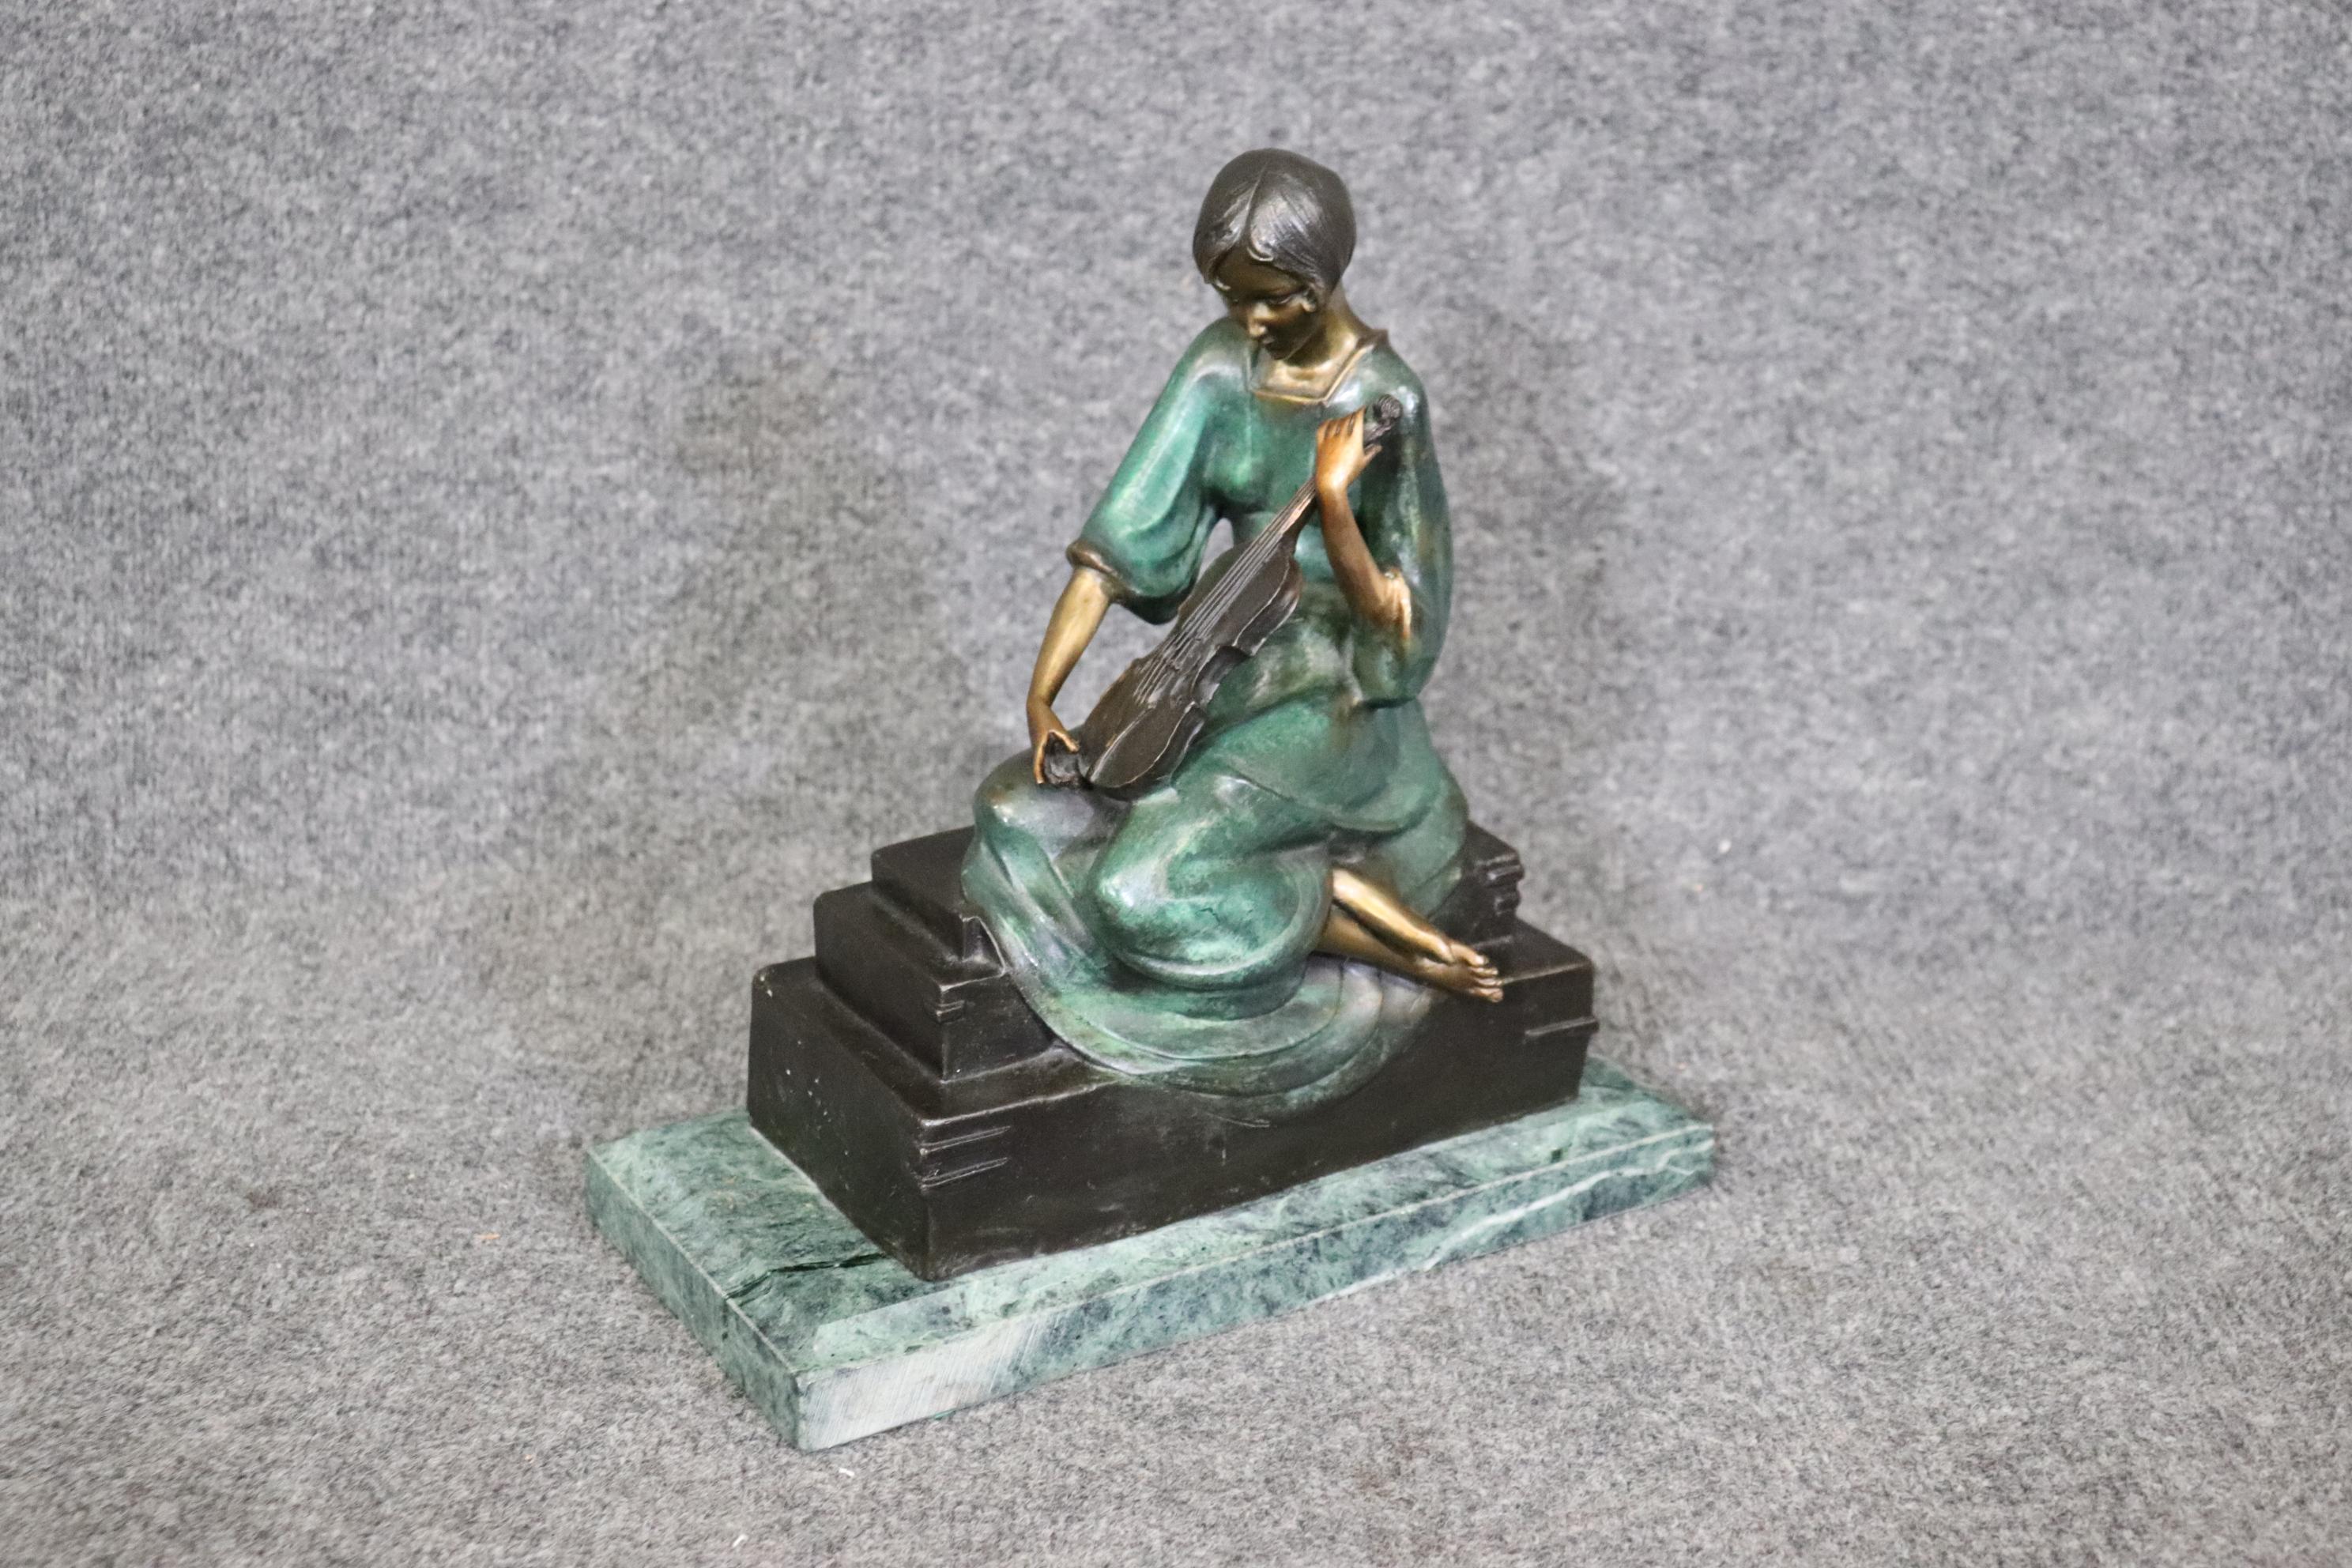 Dimensions- H : 12 1/2in W : 12po D : 6po 

Cette statue en bronze Art déco d'une femme avec un violon est de la plus haute qualité ! Cette pièce est signée Philippe. Paul Philippe (1870-1930) est un sculpteur français qui a travaillé à la fin du